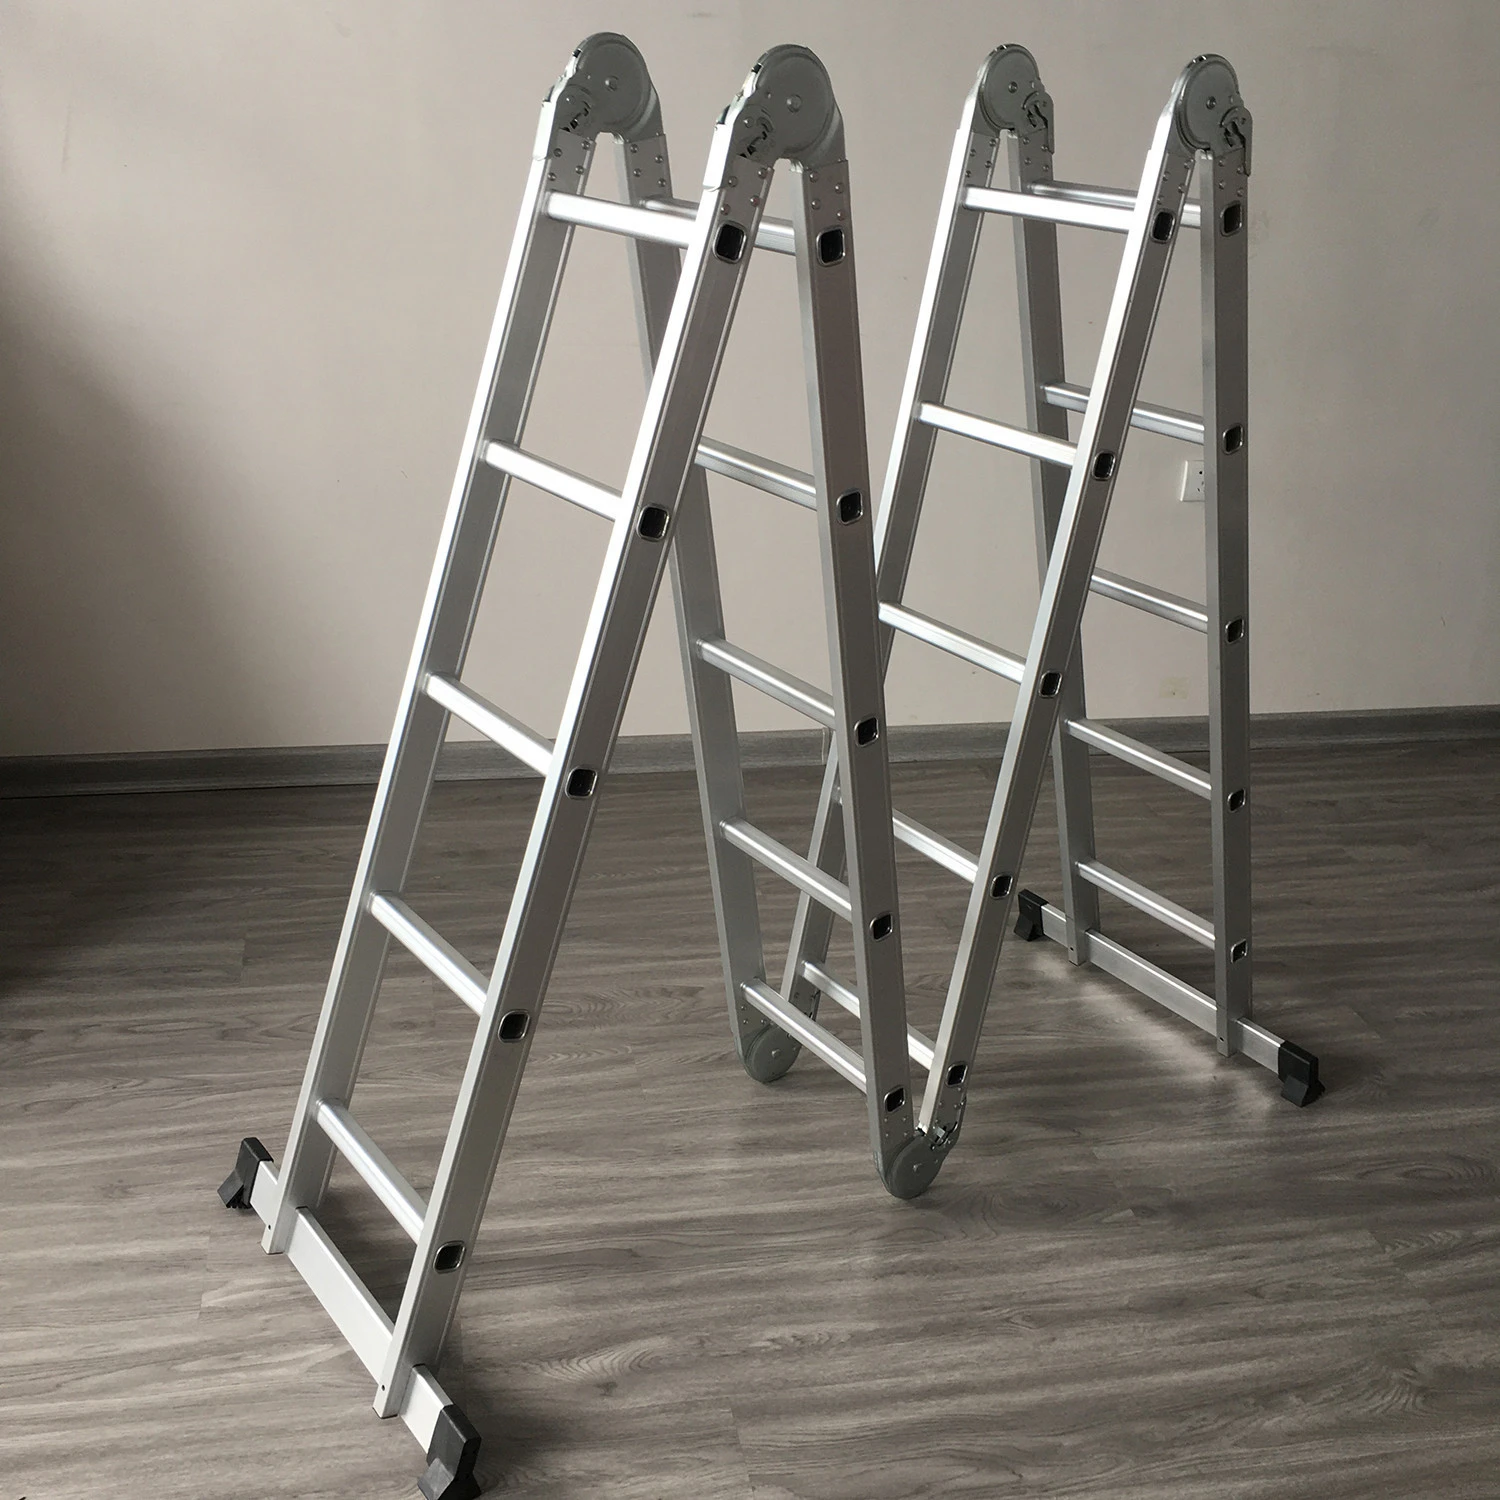 4*4 multi-purpose folding aluminium ladders